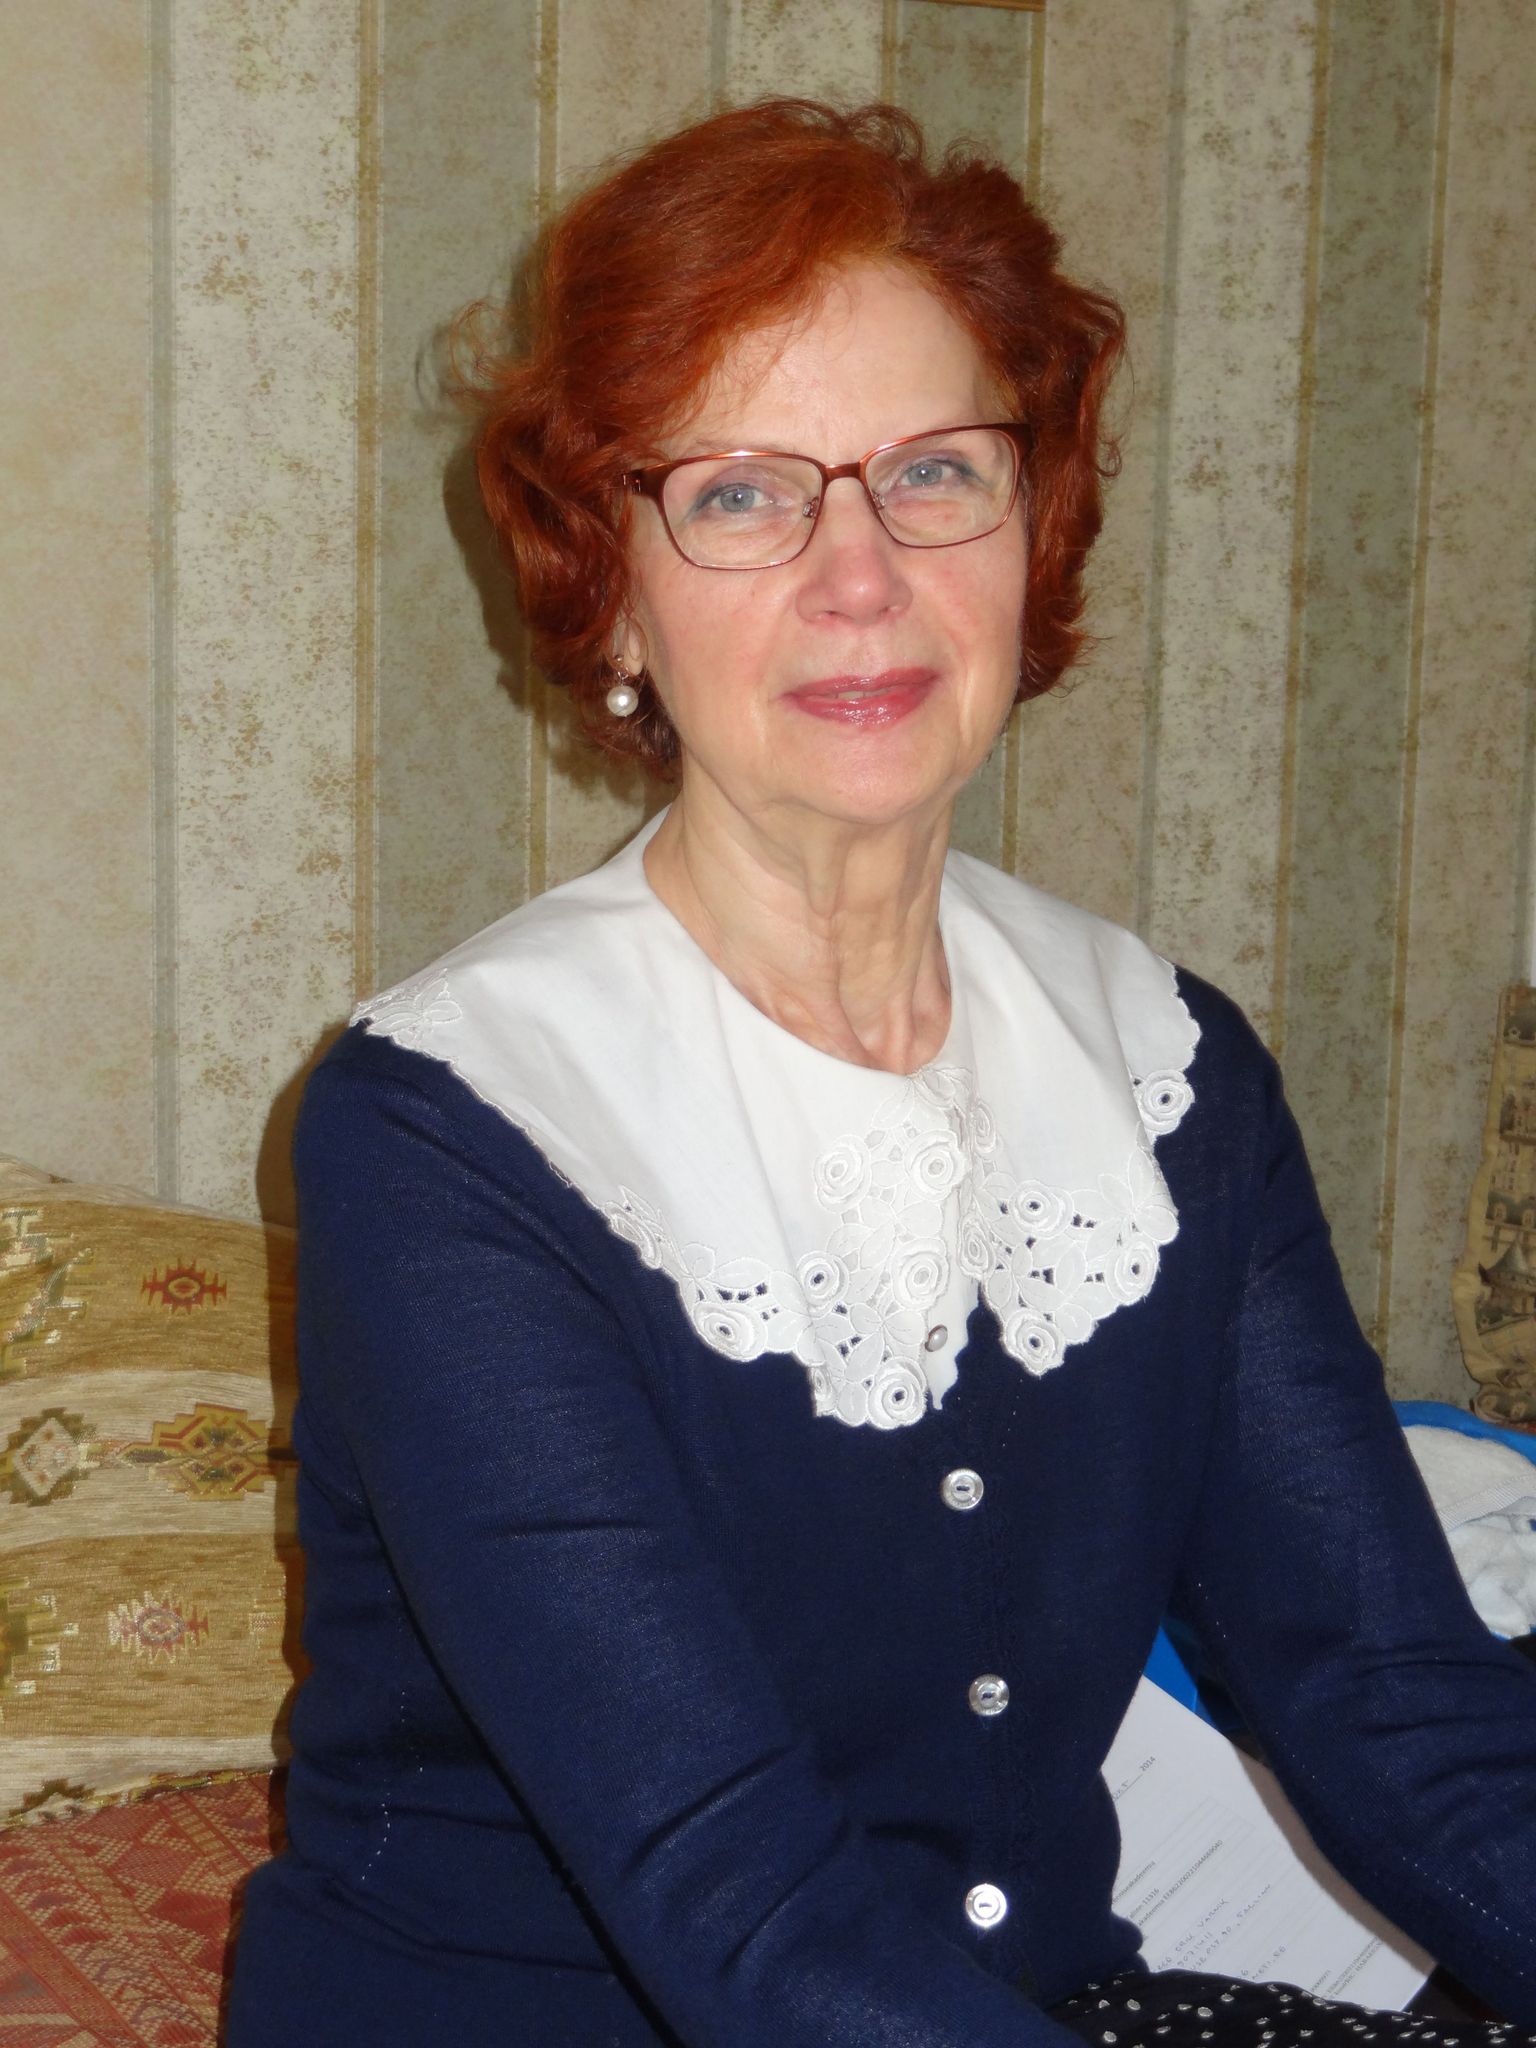 Airi Värnik, Tallinna Ülikooli sotsiaaltöö instituudi vaimse tervise professor.